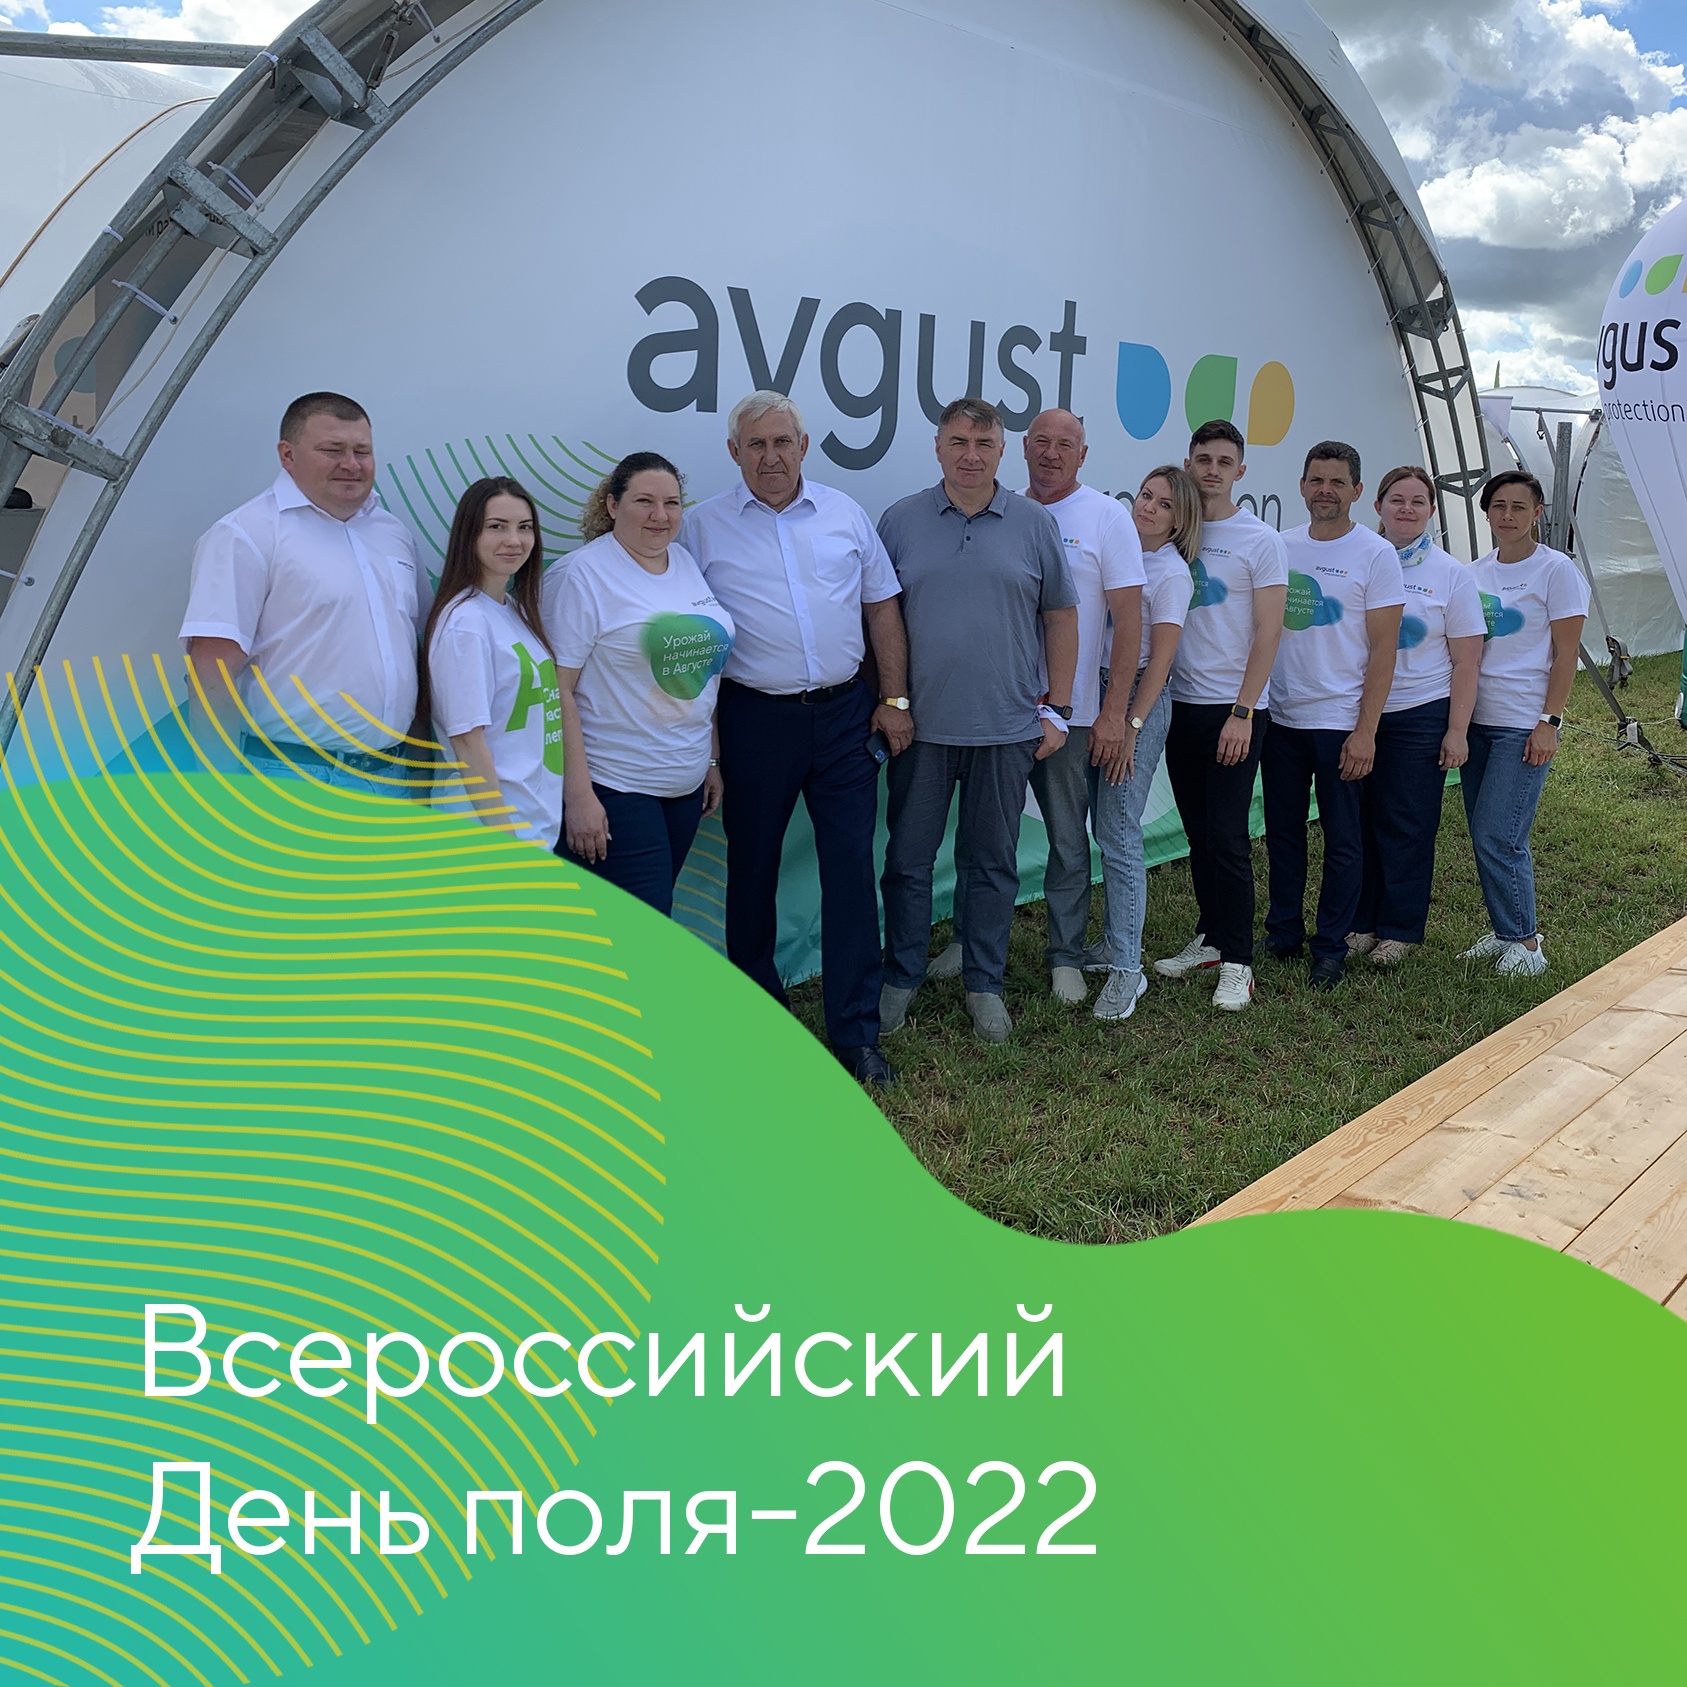 Второй день Всероссийского Дня поля-2022